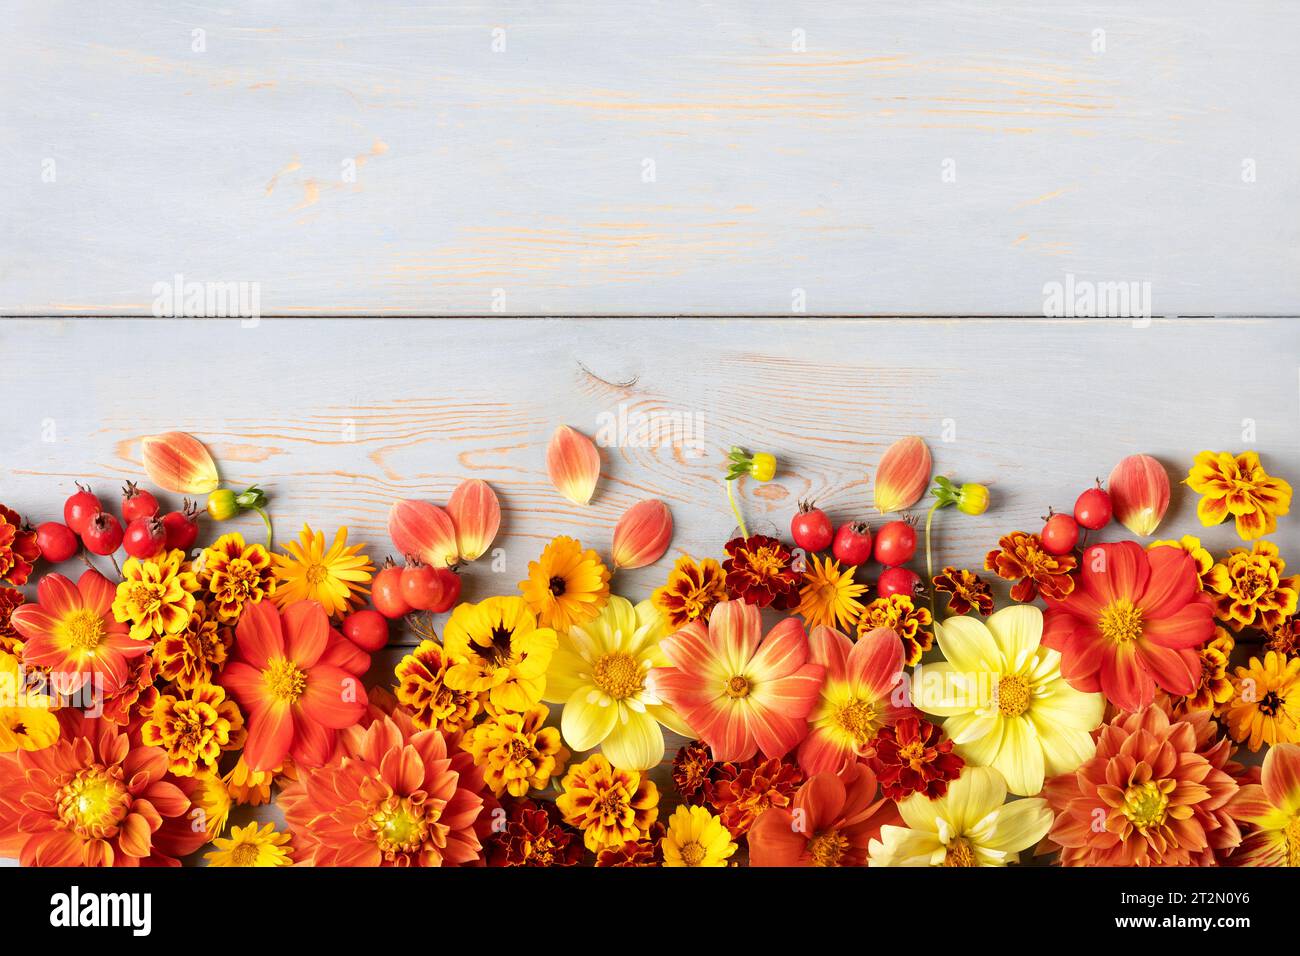 北川景子MUSICUS! Special Single “Autumn” Dr.Flower OVERDRIVE PS4 SWITCH 瀬戸口廉也 唐辺葉介 CARNIVAL SWAN SONG キラ☆キラ その他